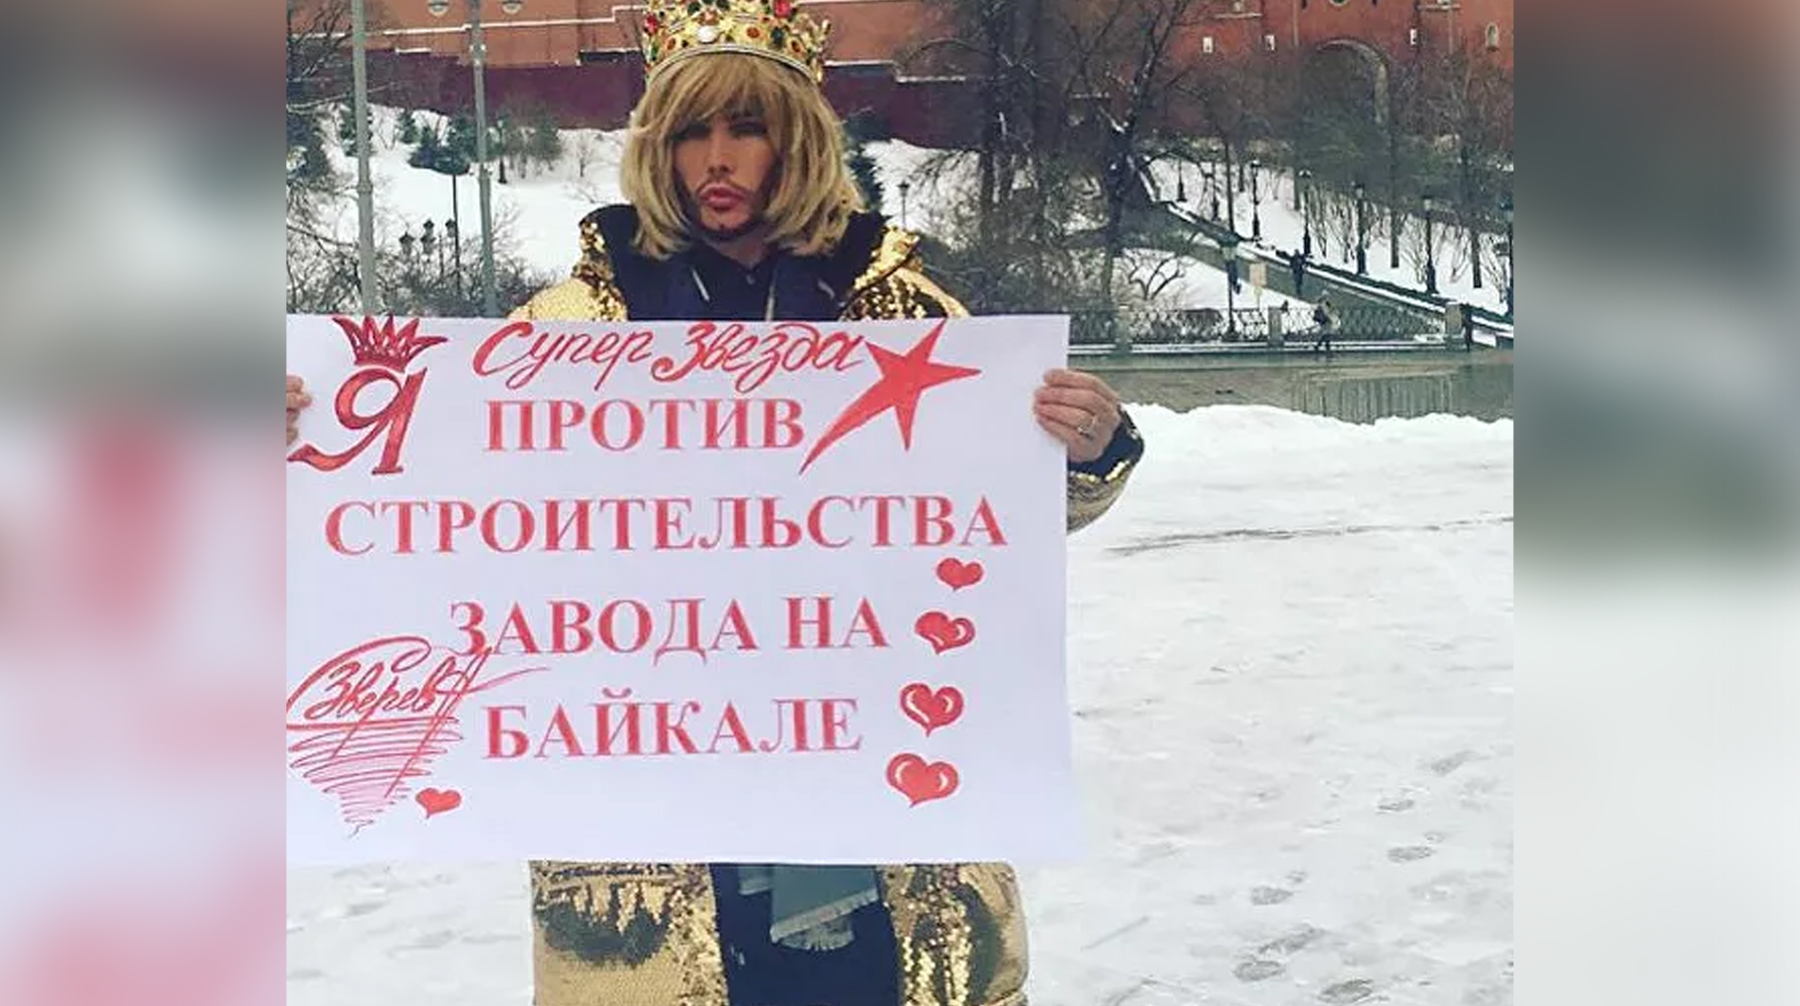 Адвокат стилиста Татьяна Глушкова отметила, что наказание за мирный пикет является непропорциональным Фото: © 
 instagram.com/zverevsuperstar